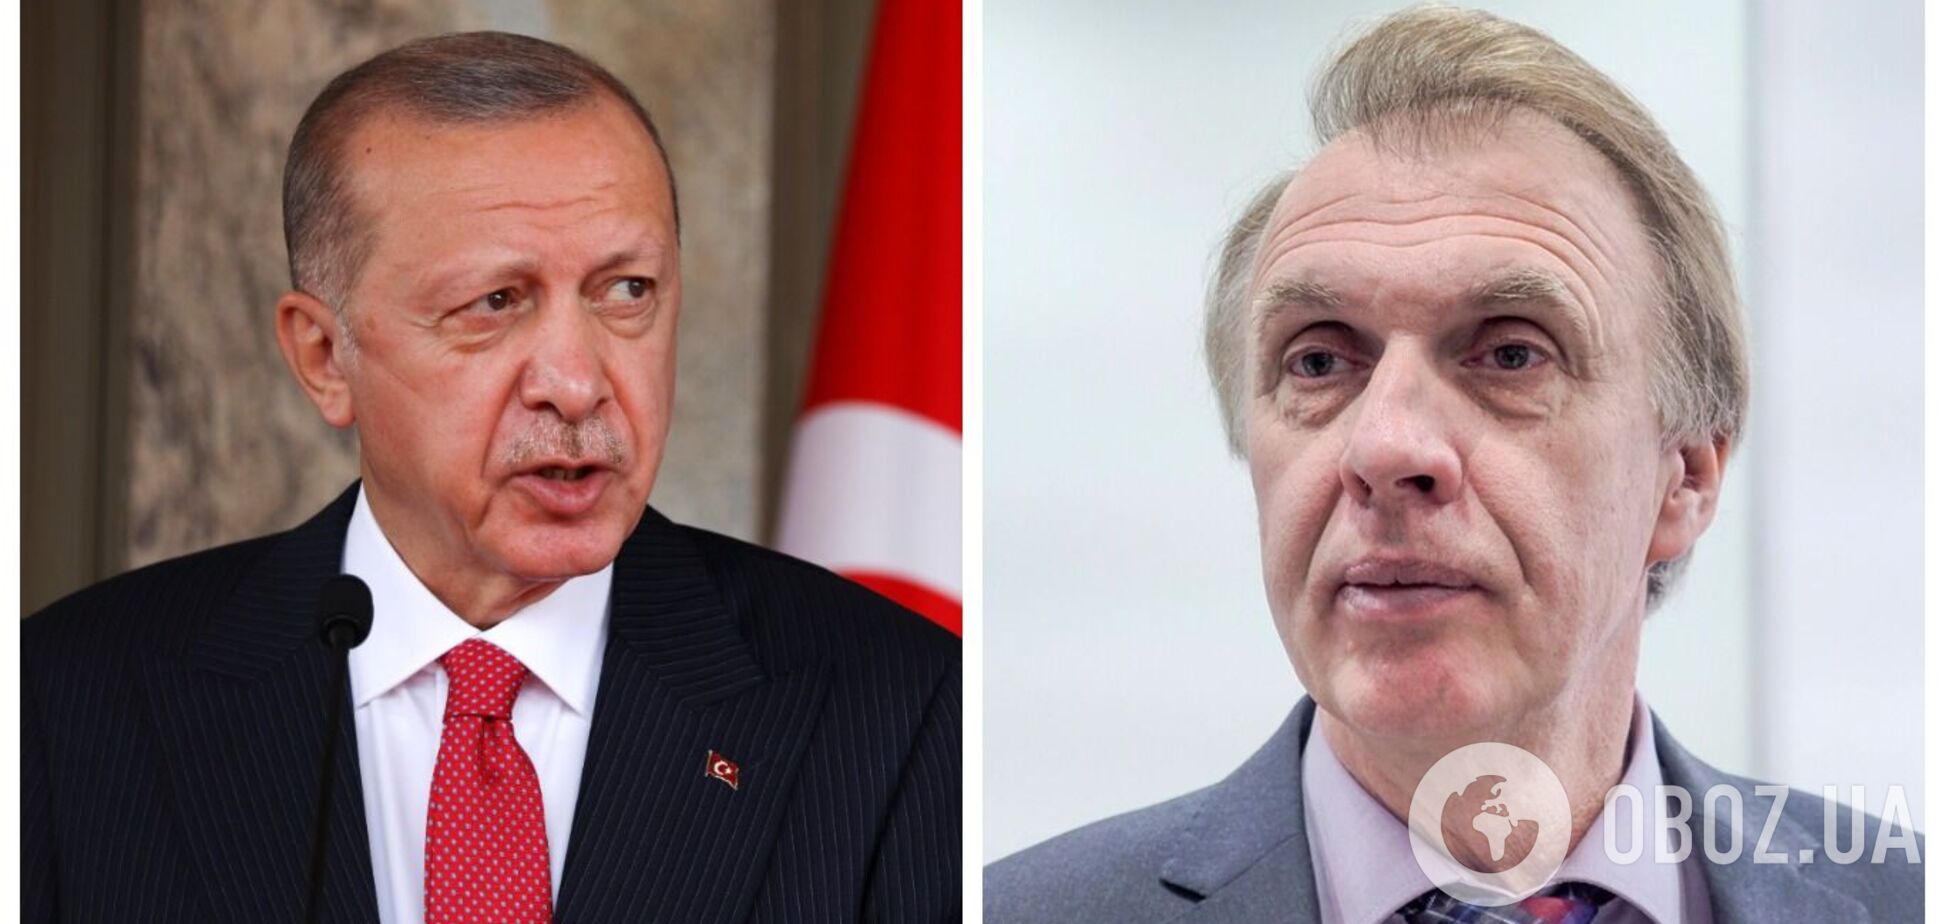 Чому Ердоган заступився за РФ після ракетного інциденту в Польщі: Огризко пояснив поведінку лідера Туреччини